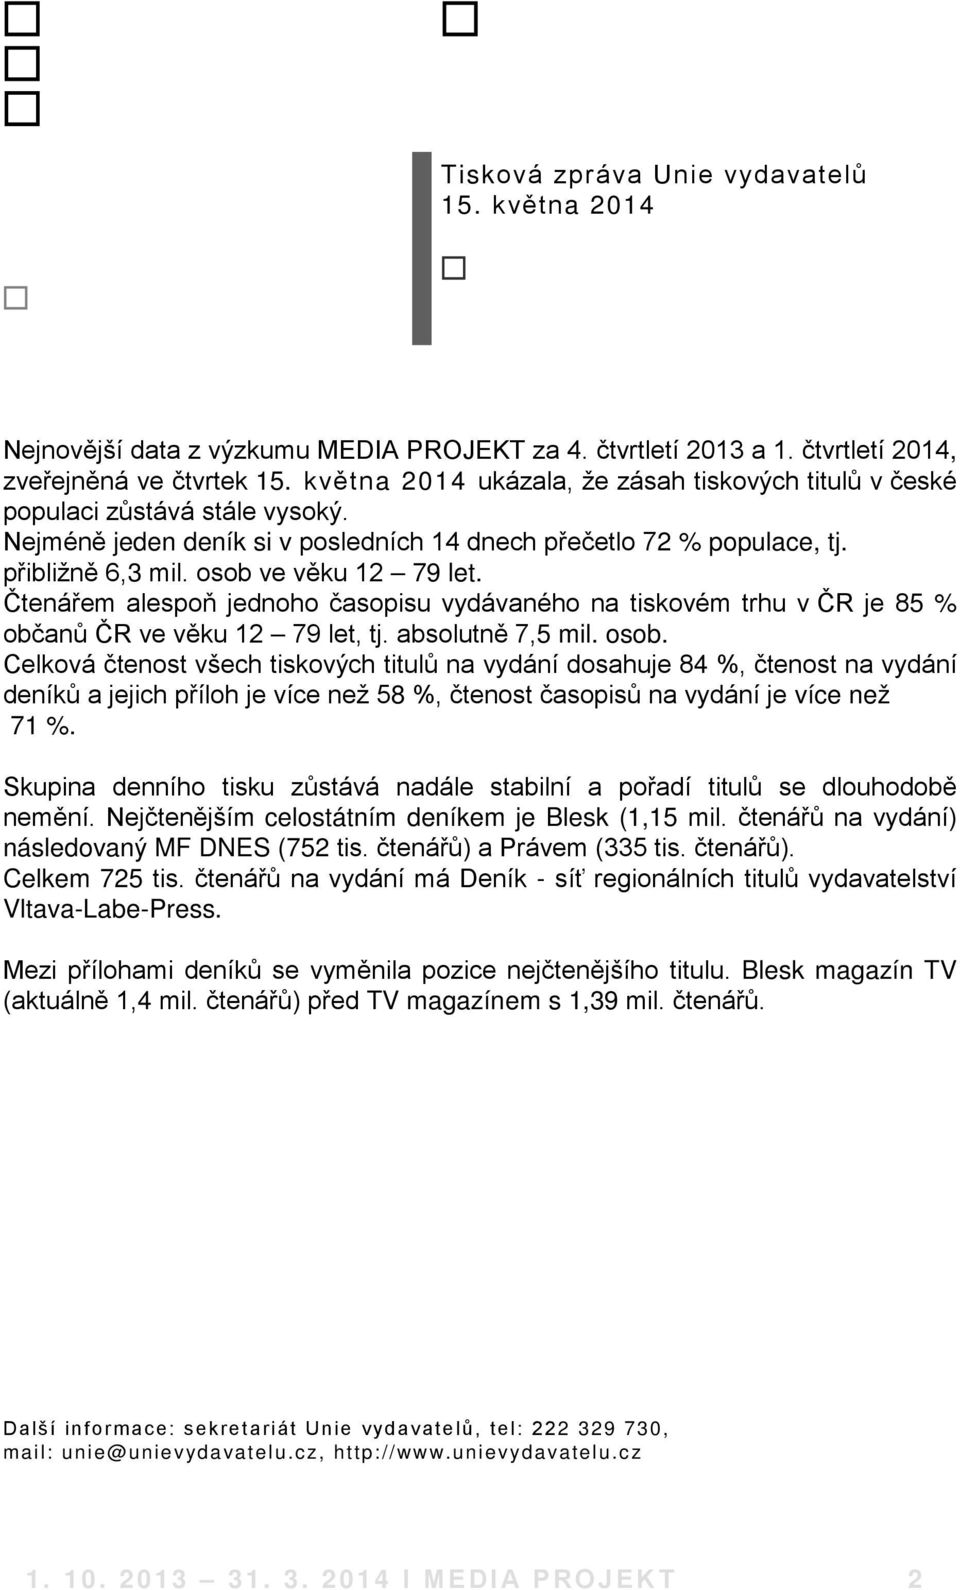 osob ve věku 12 79 let. Čtenářem alespoň jednoho časopisu vydávaného na tiskovém trhu v ČR je 85 % občanů ČR ve věku 12 79 let, tj. absolutně 7,5 mil. osob.